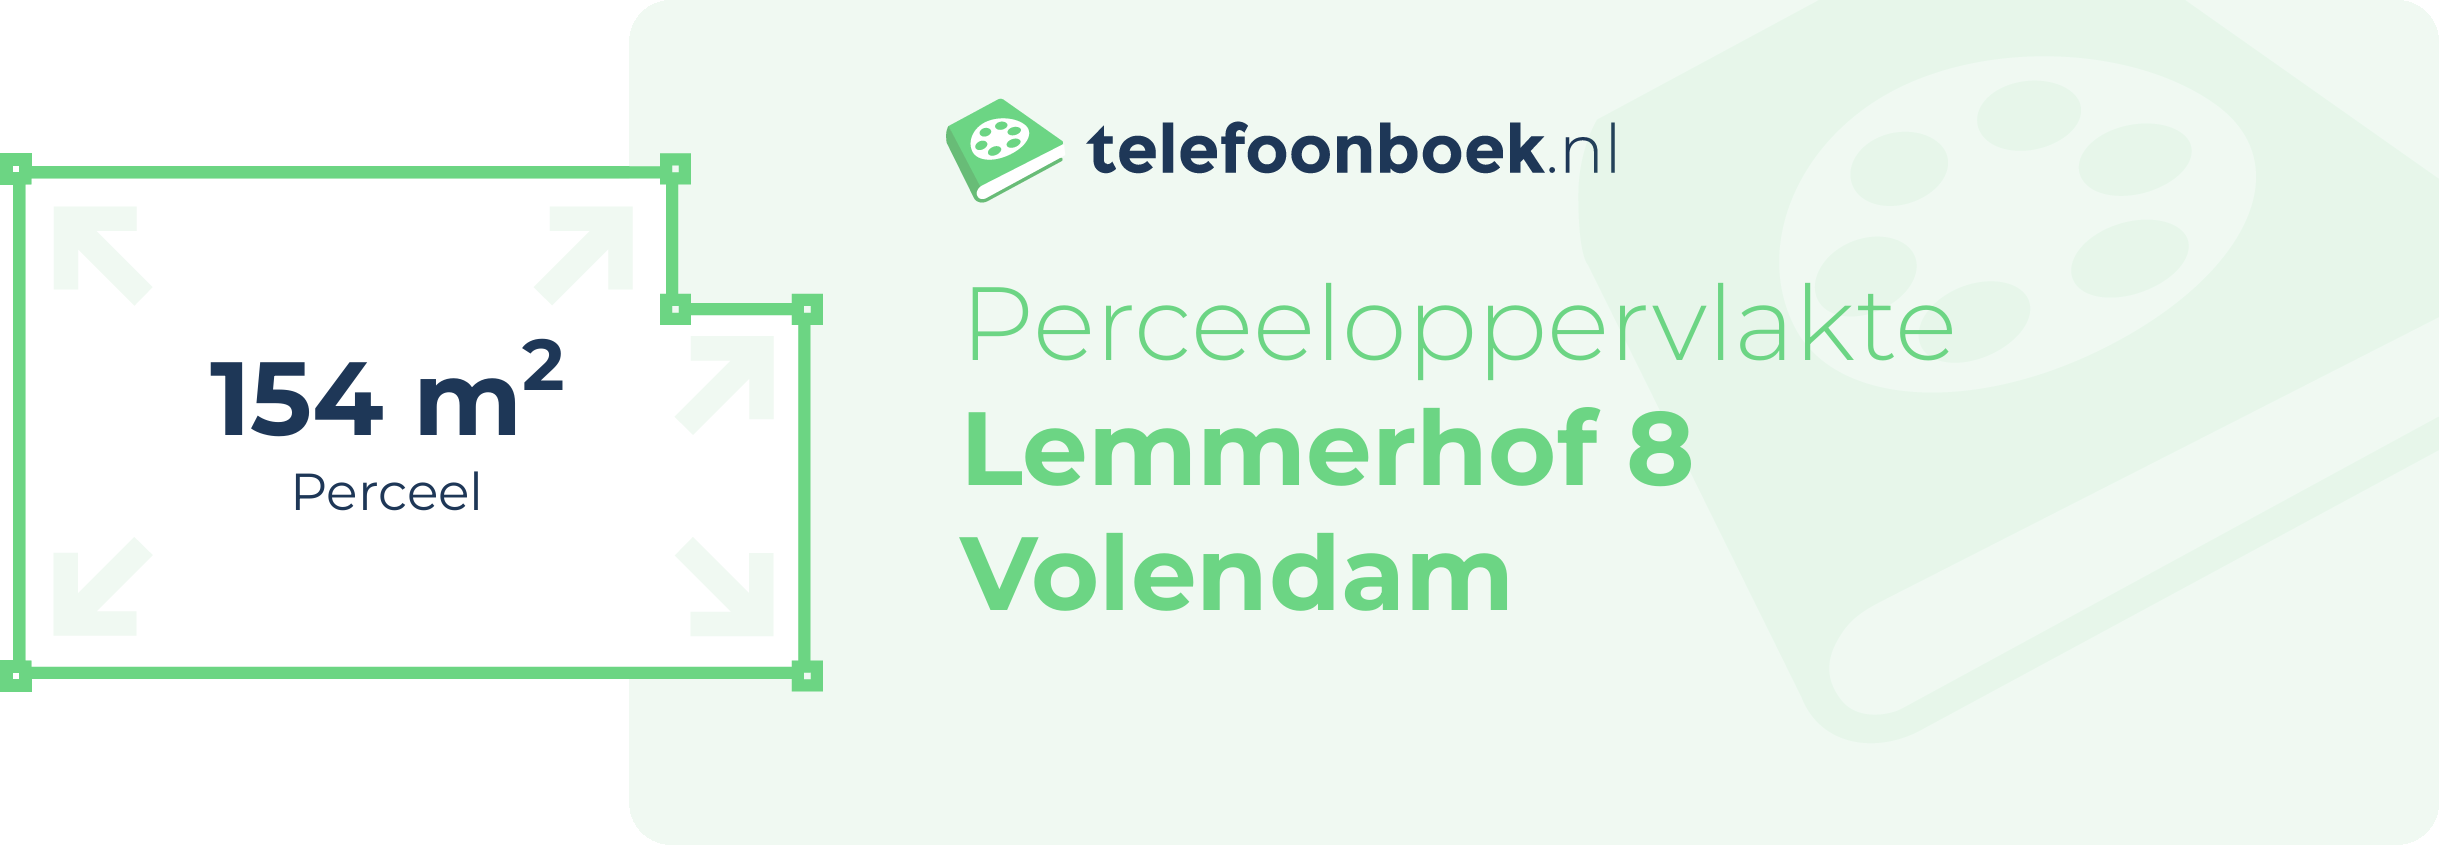 Perceeloppervlakte Lemmerhof 8 Volendam